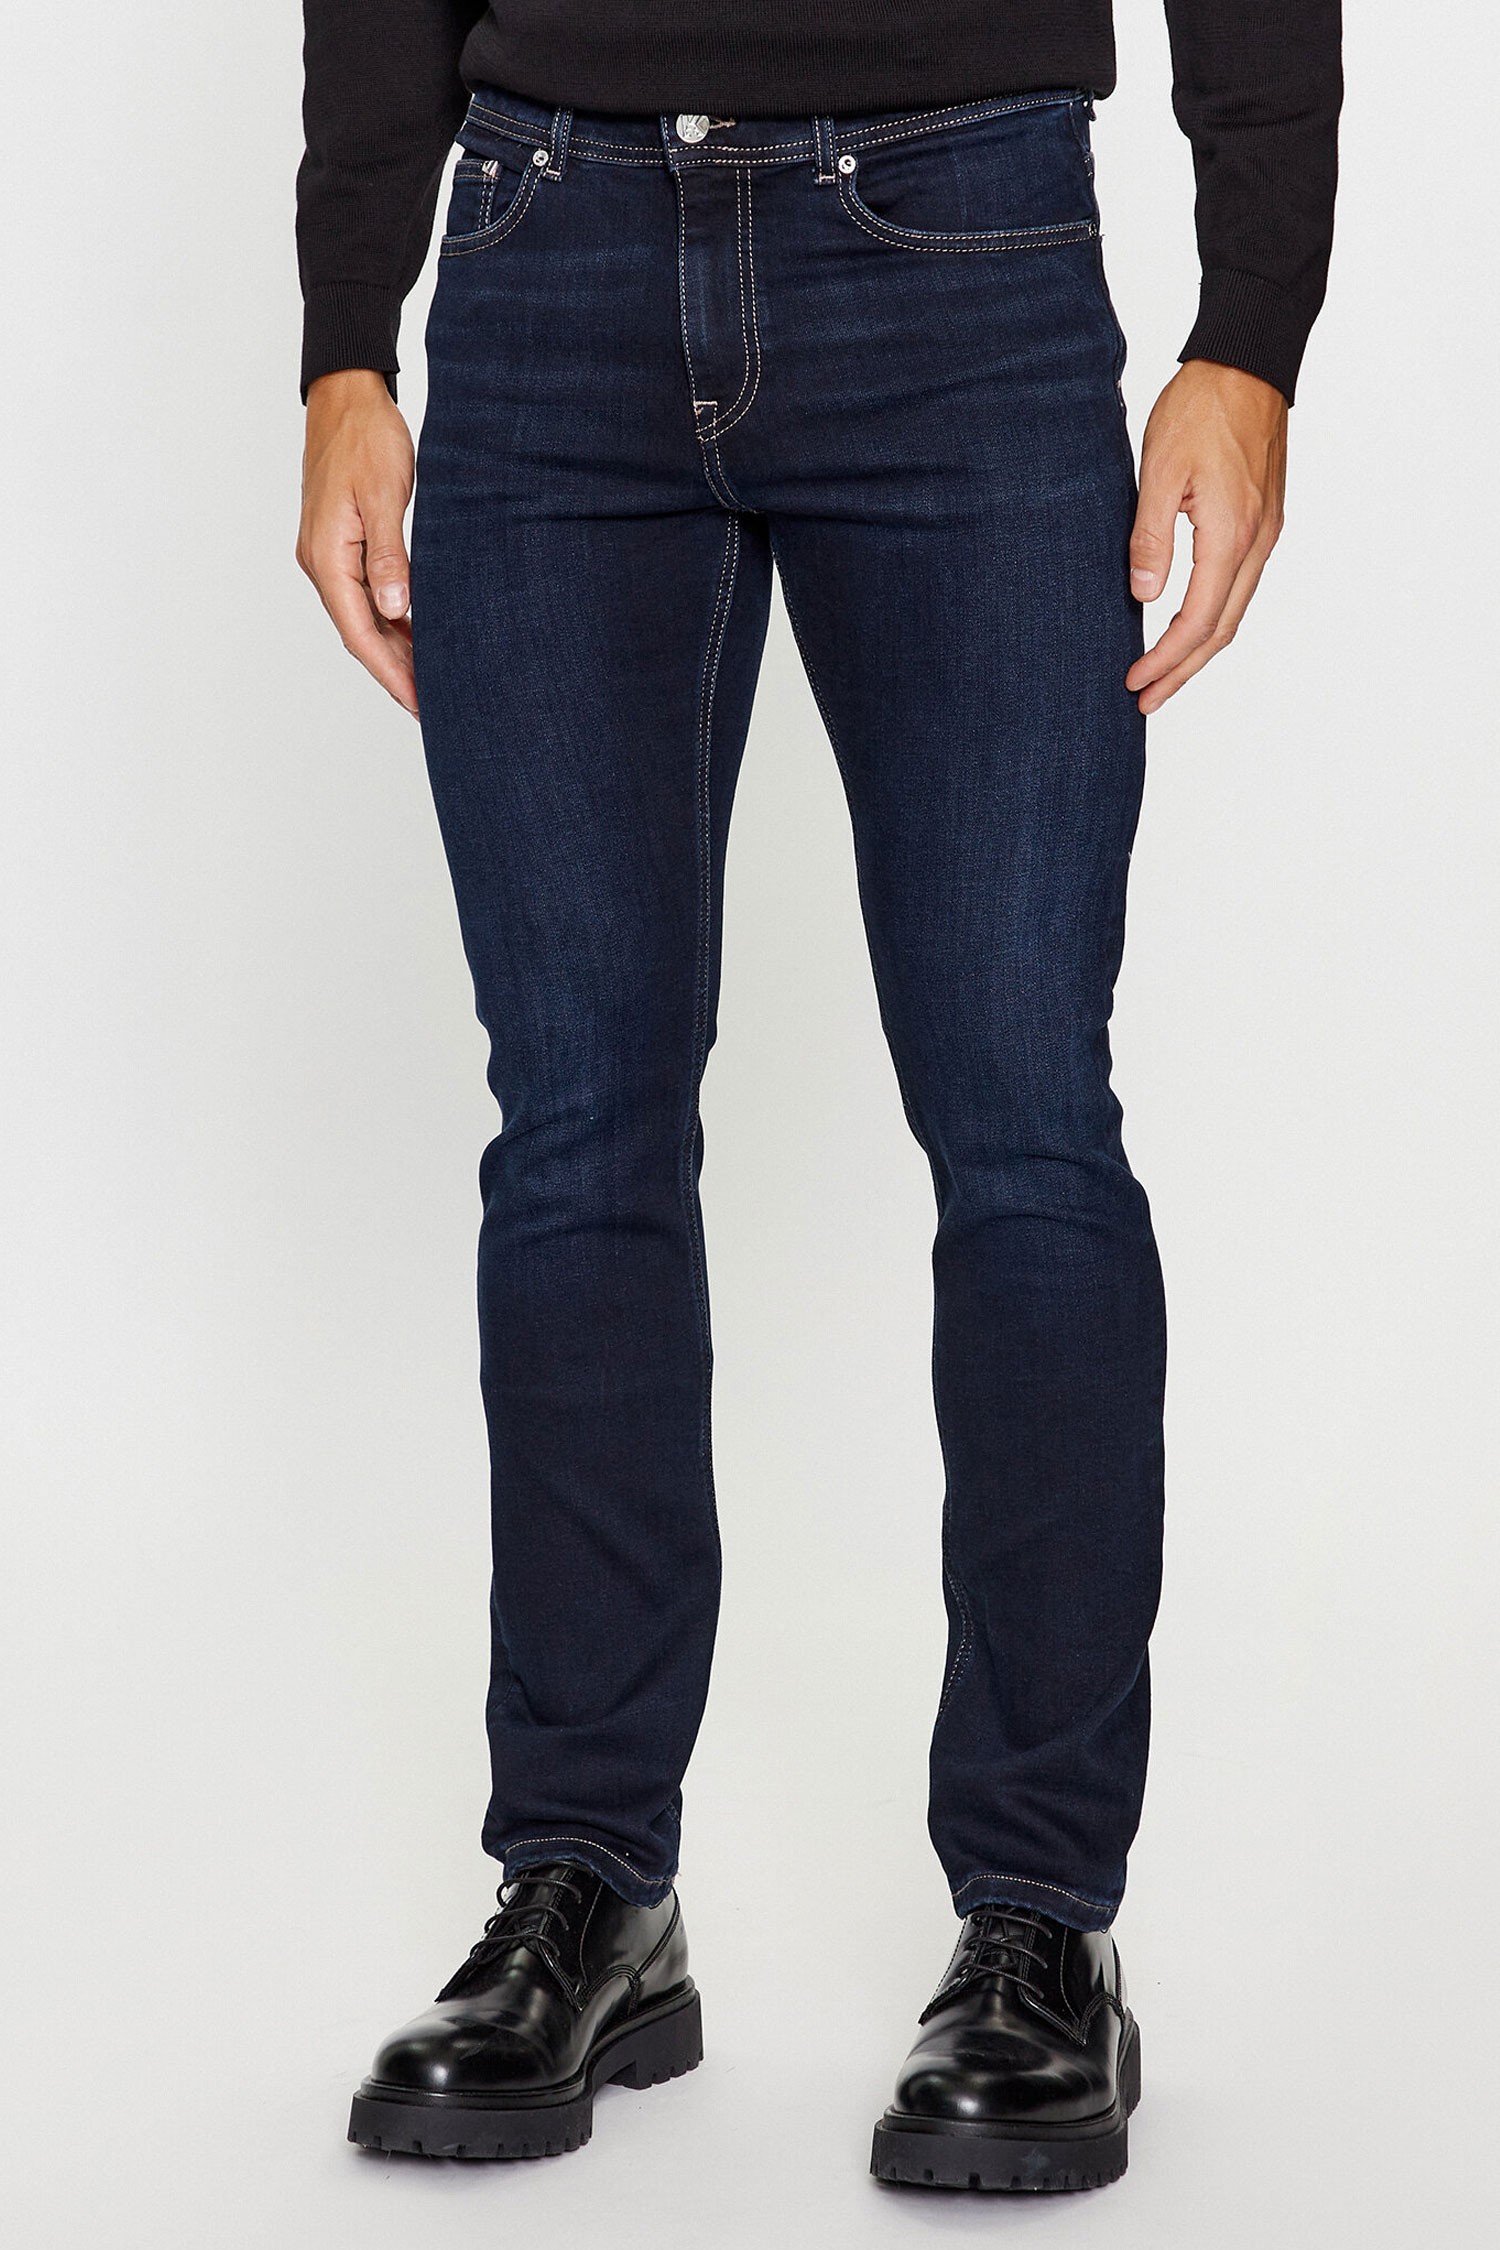 Мужские темно-синие джинсы Karl Lagerfeld 500830.265840;690